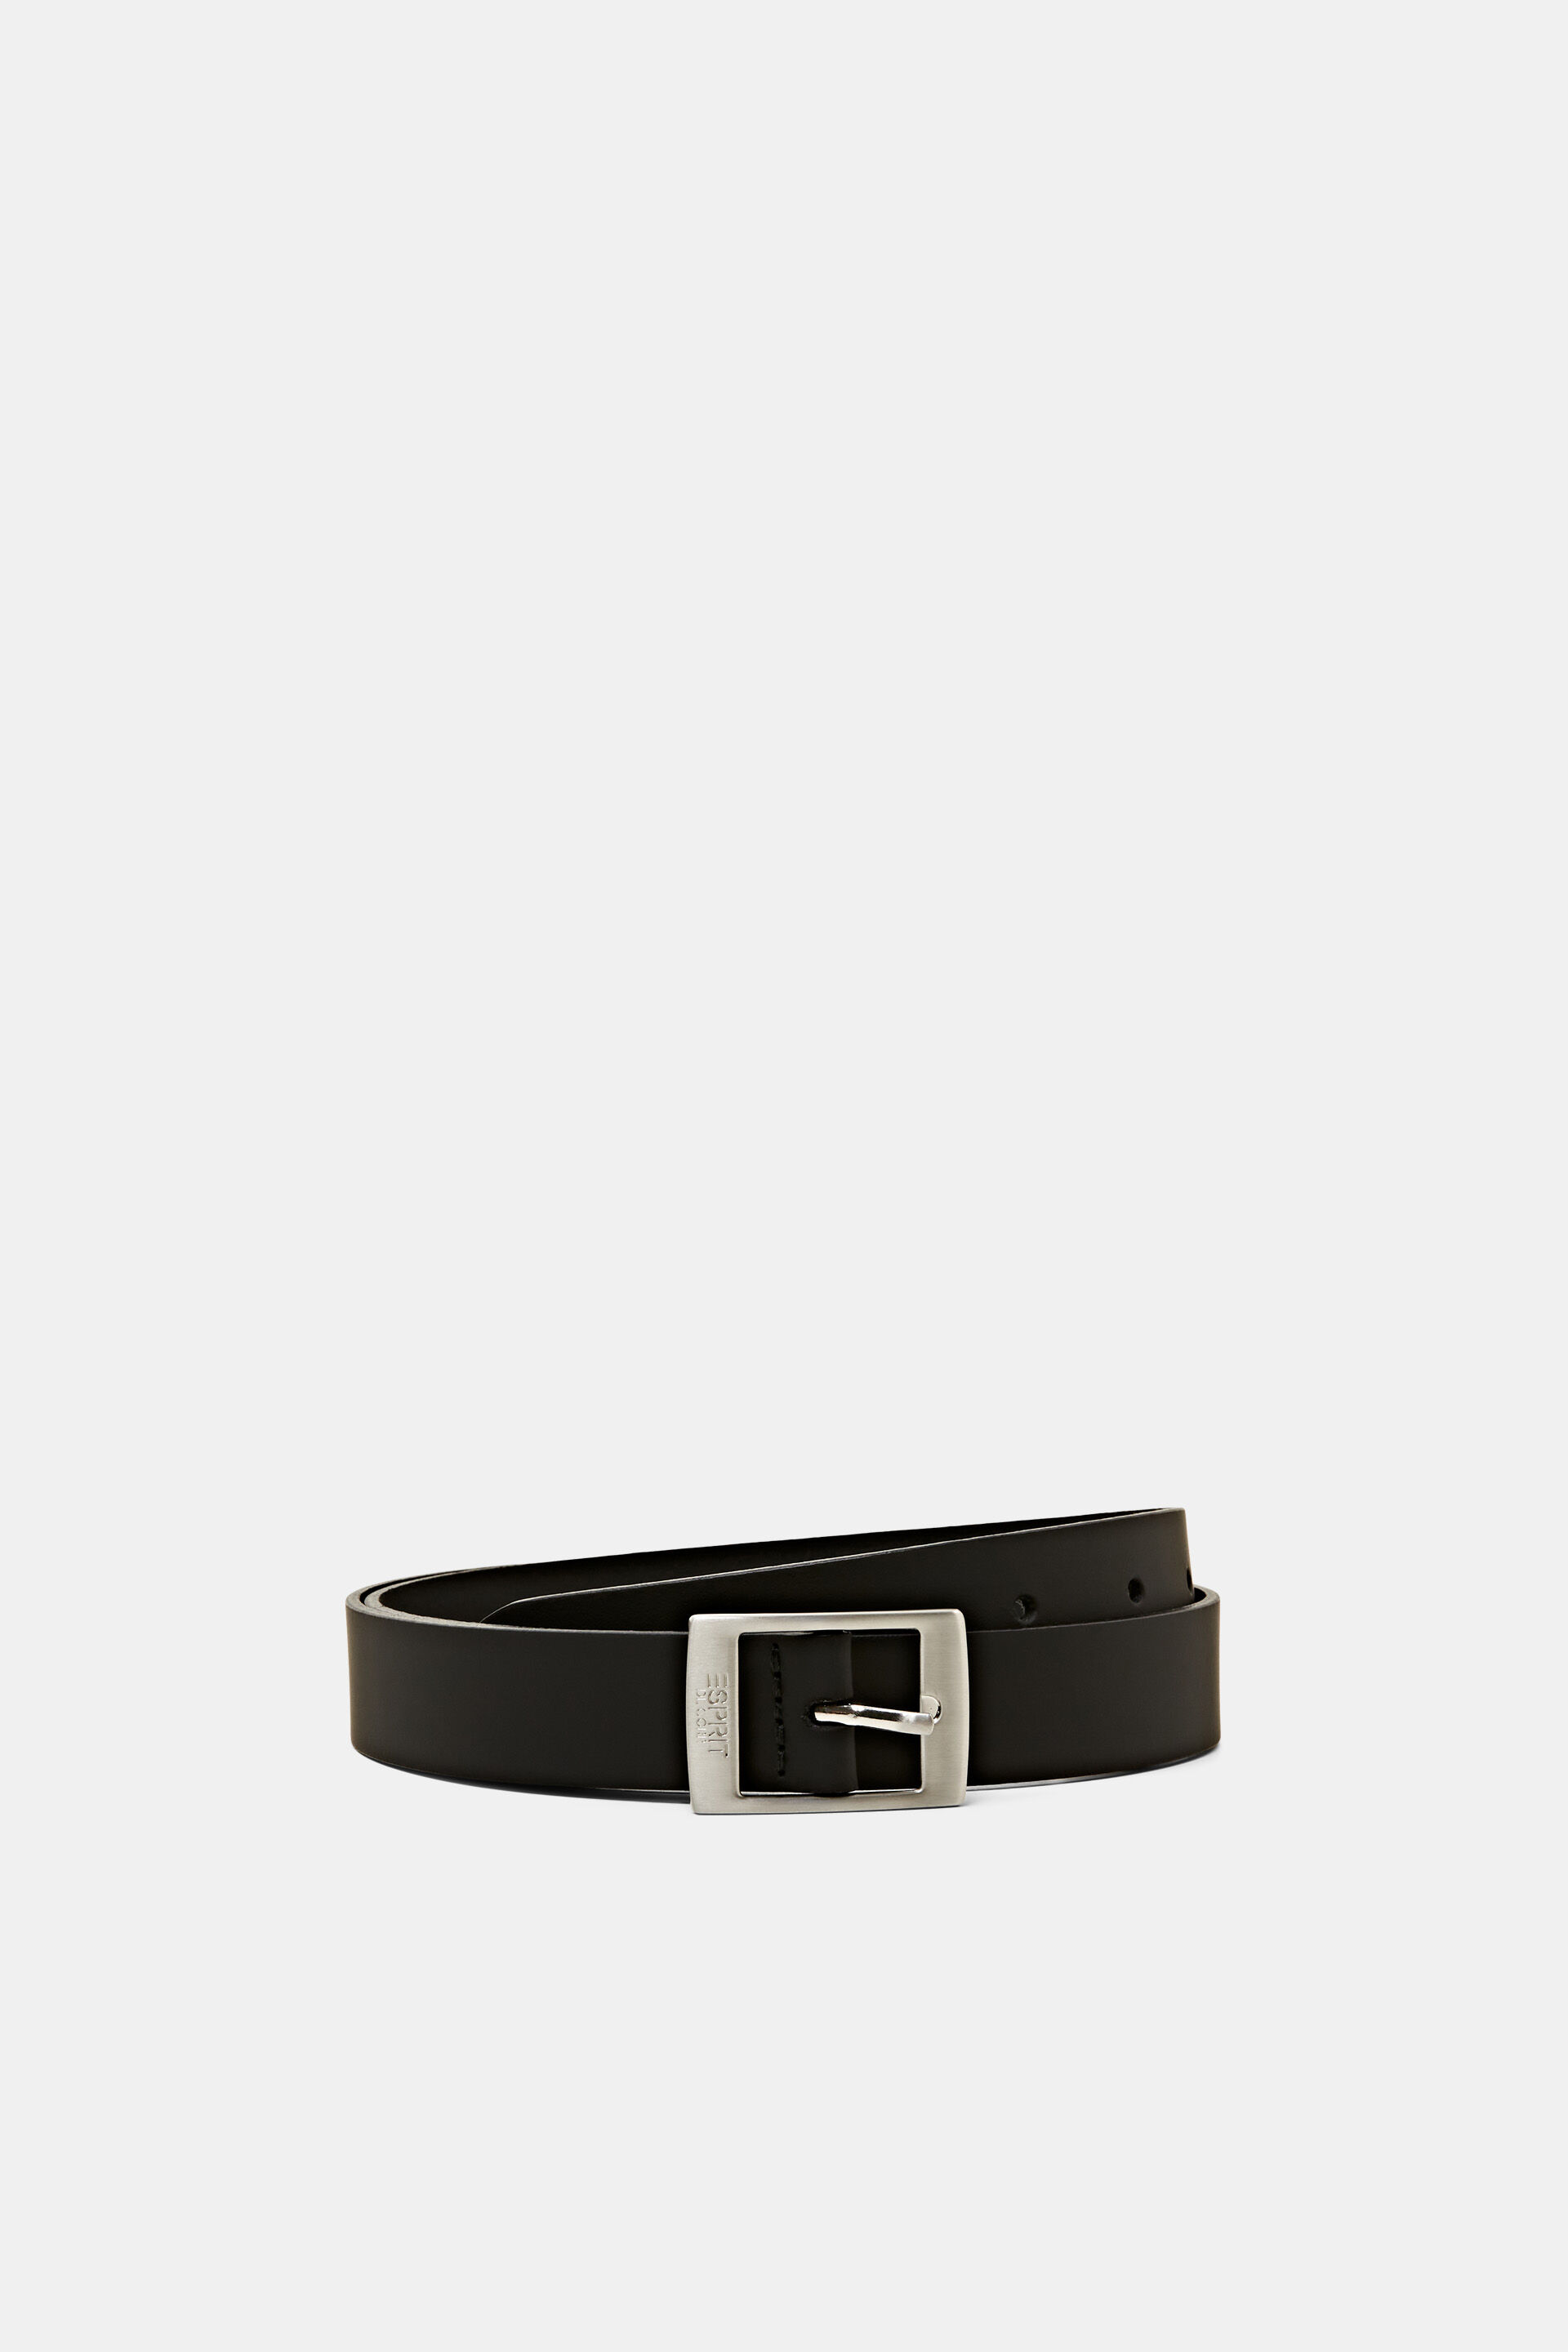 Esprit leather Belts